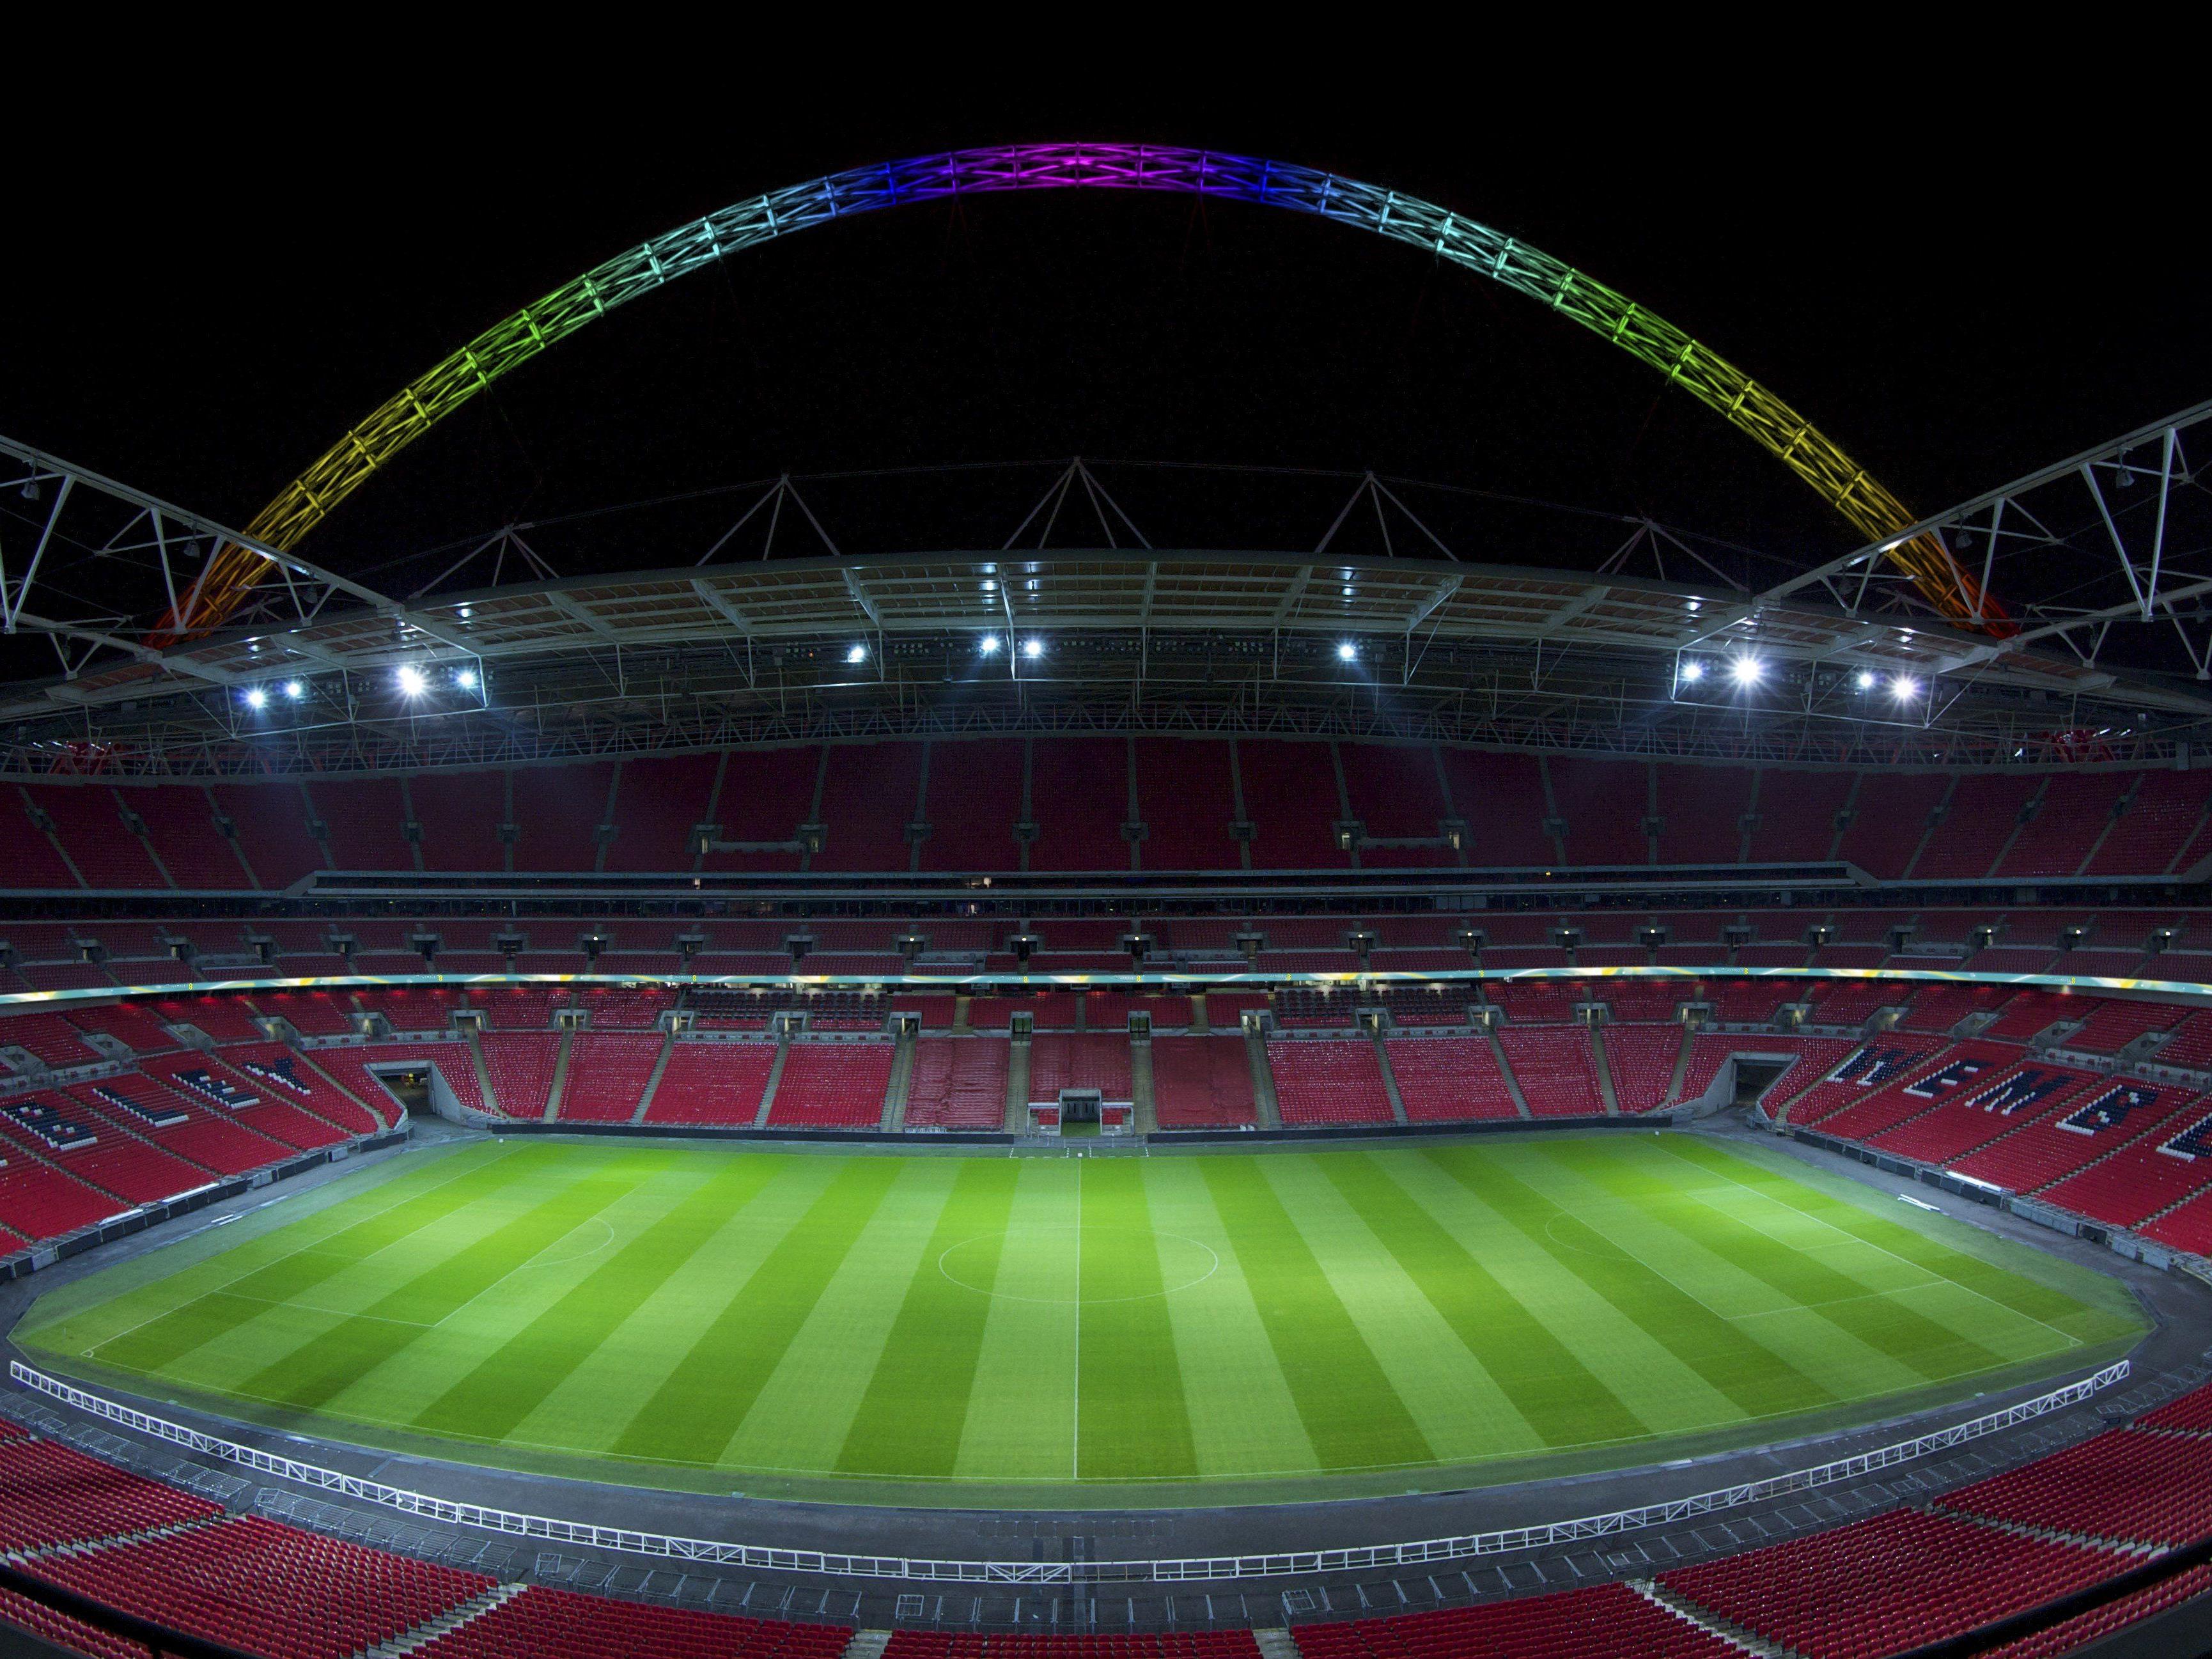 Der Wembley-Bogen mit farbiger LED Beleuchtung von Thorn Lighting.